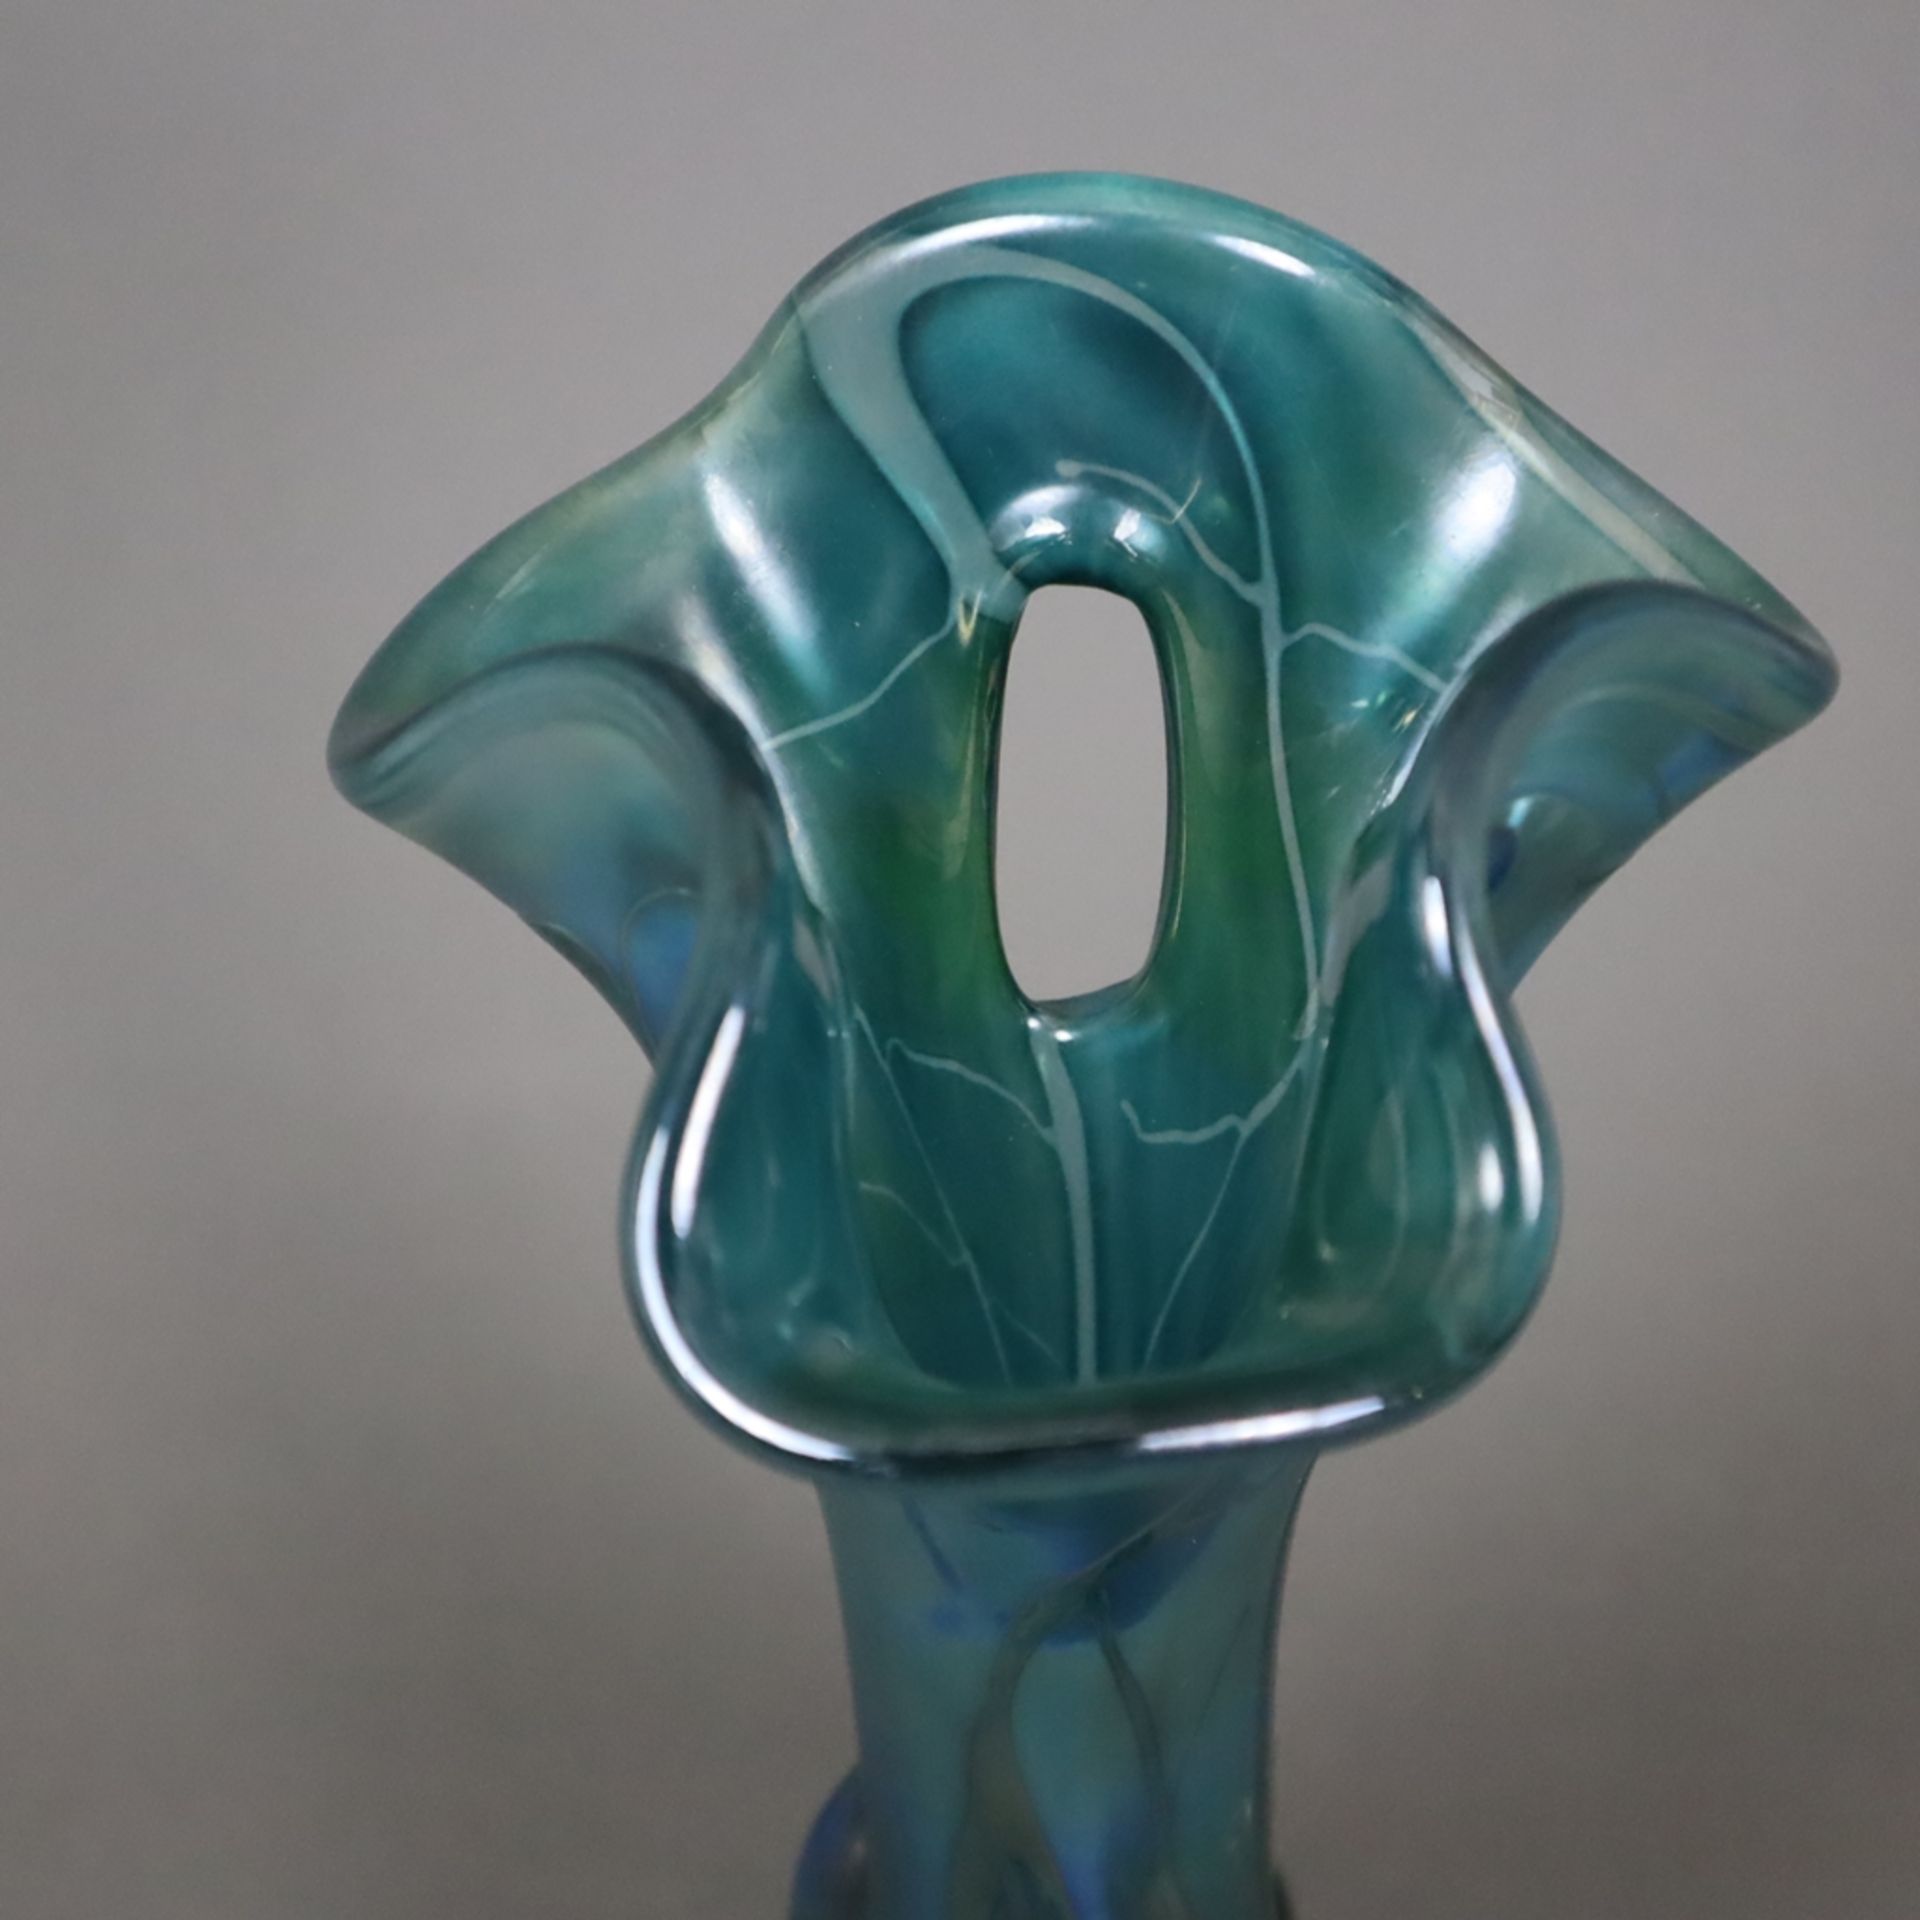 Jugendstil-Vase - Glas, teils irisierte Oberfläche, organische Form mit gewelltem, dreifach durchbr - Image 2 of 5